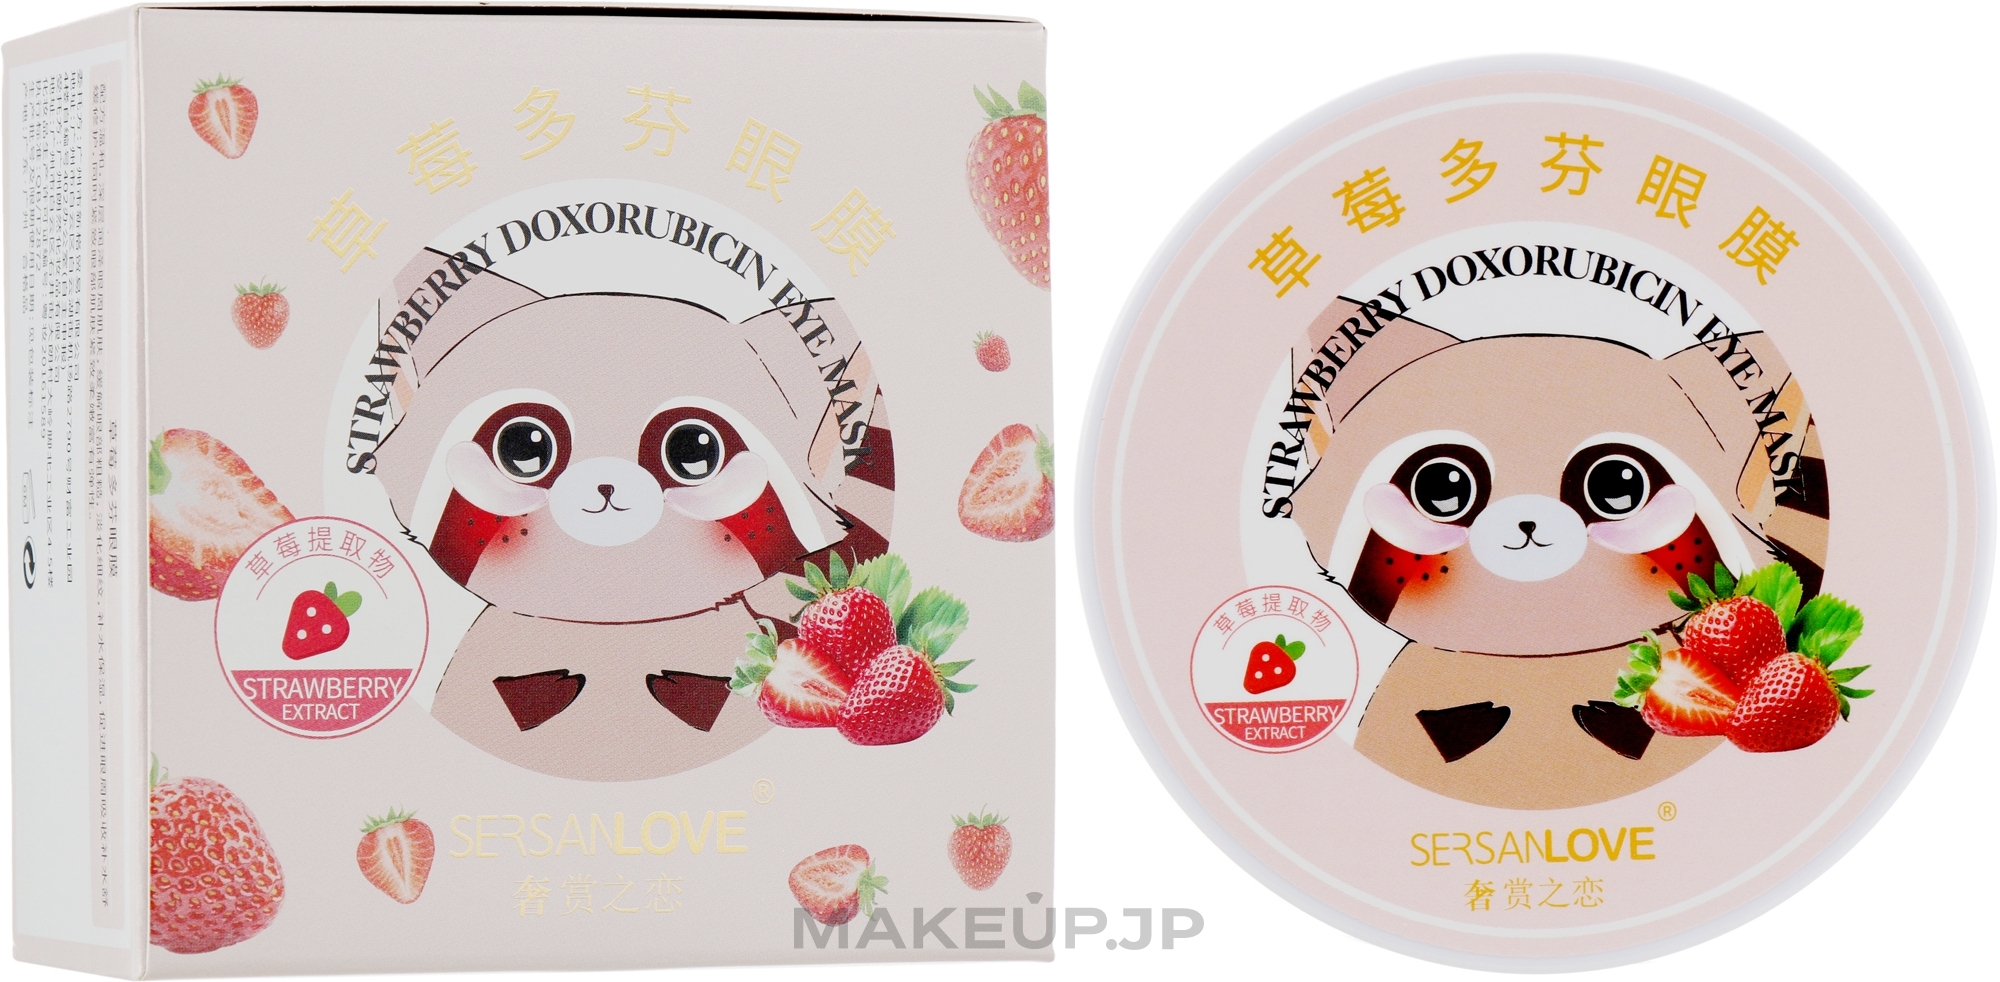 Strawberry Extract Eye patches - Sersanlove Strawberry Doxorubicin Eye Mask — photo 60 szt.